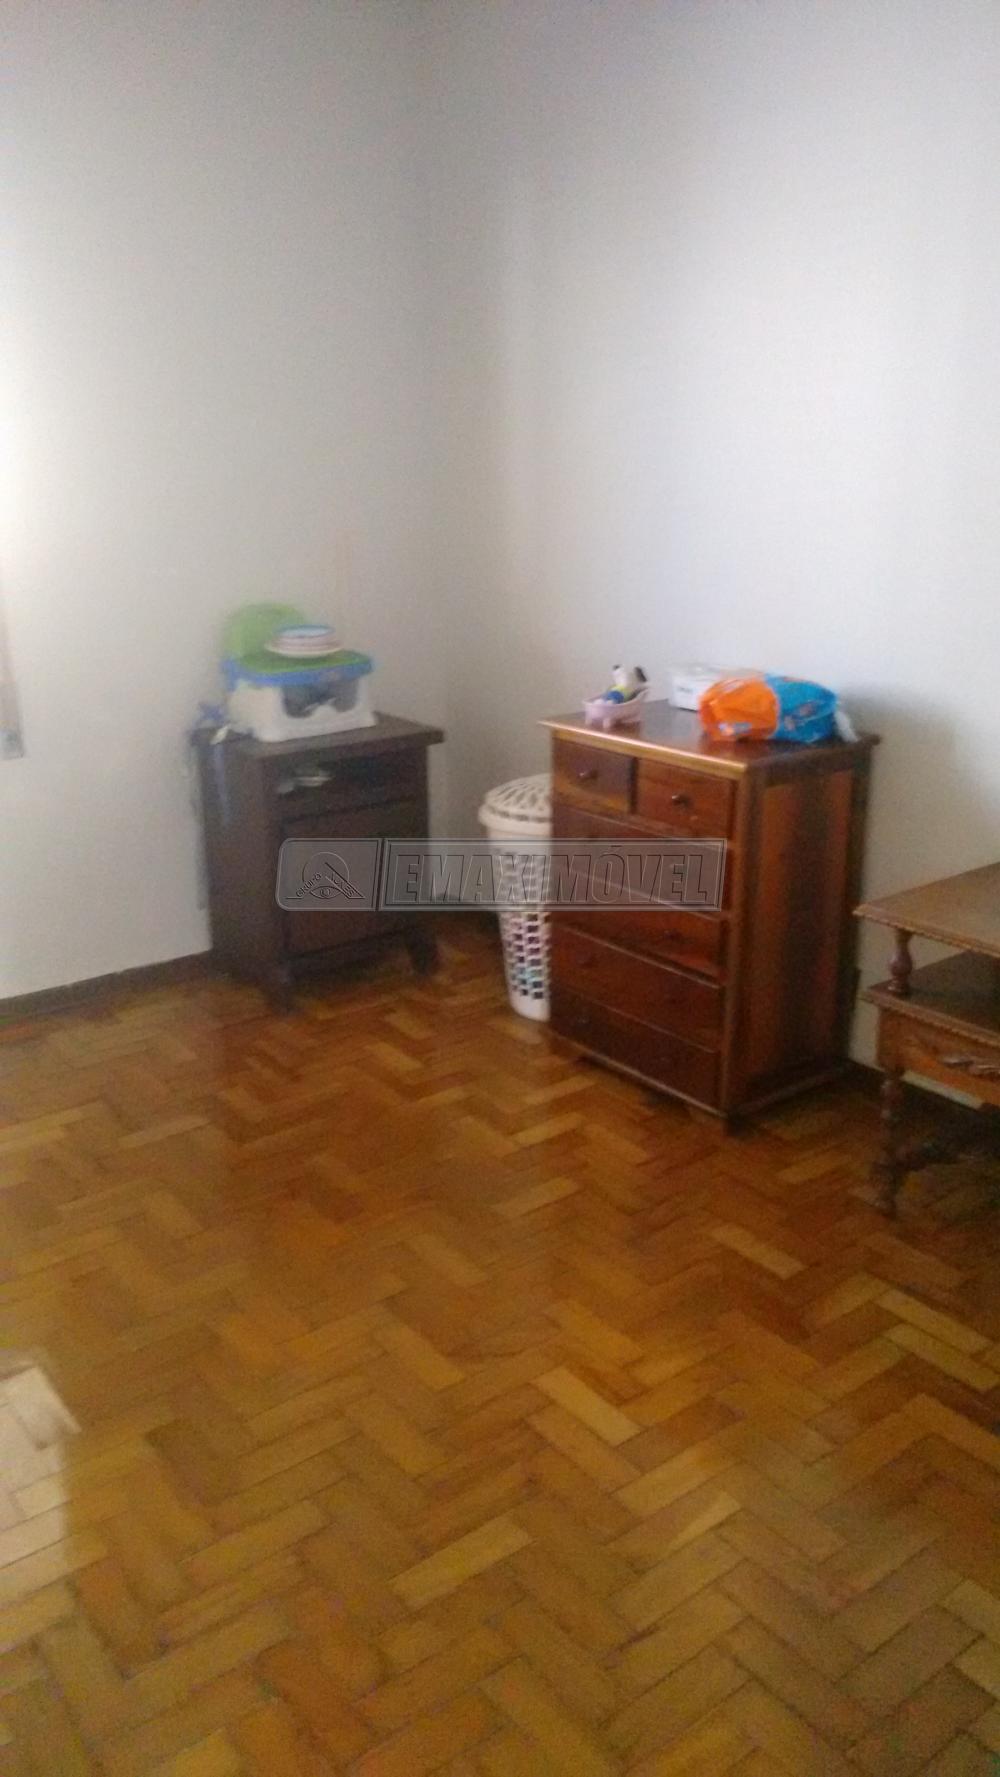 Comprar Apartamento / Padrão em Sorocaba R$ 550.000,00 - Foto 9